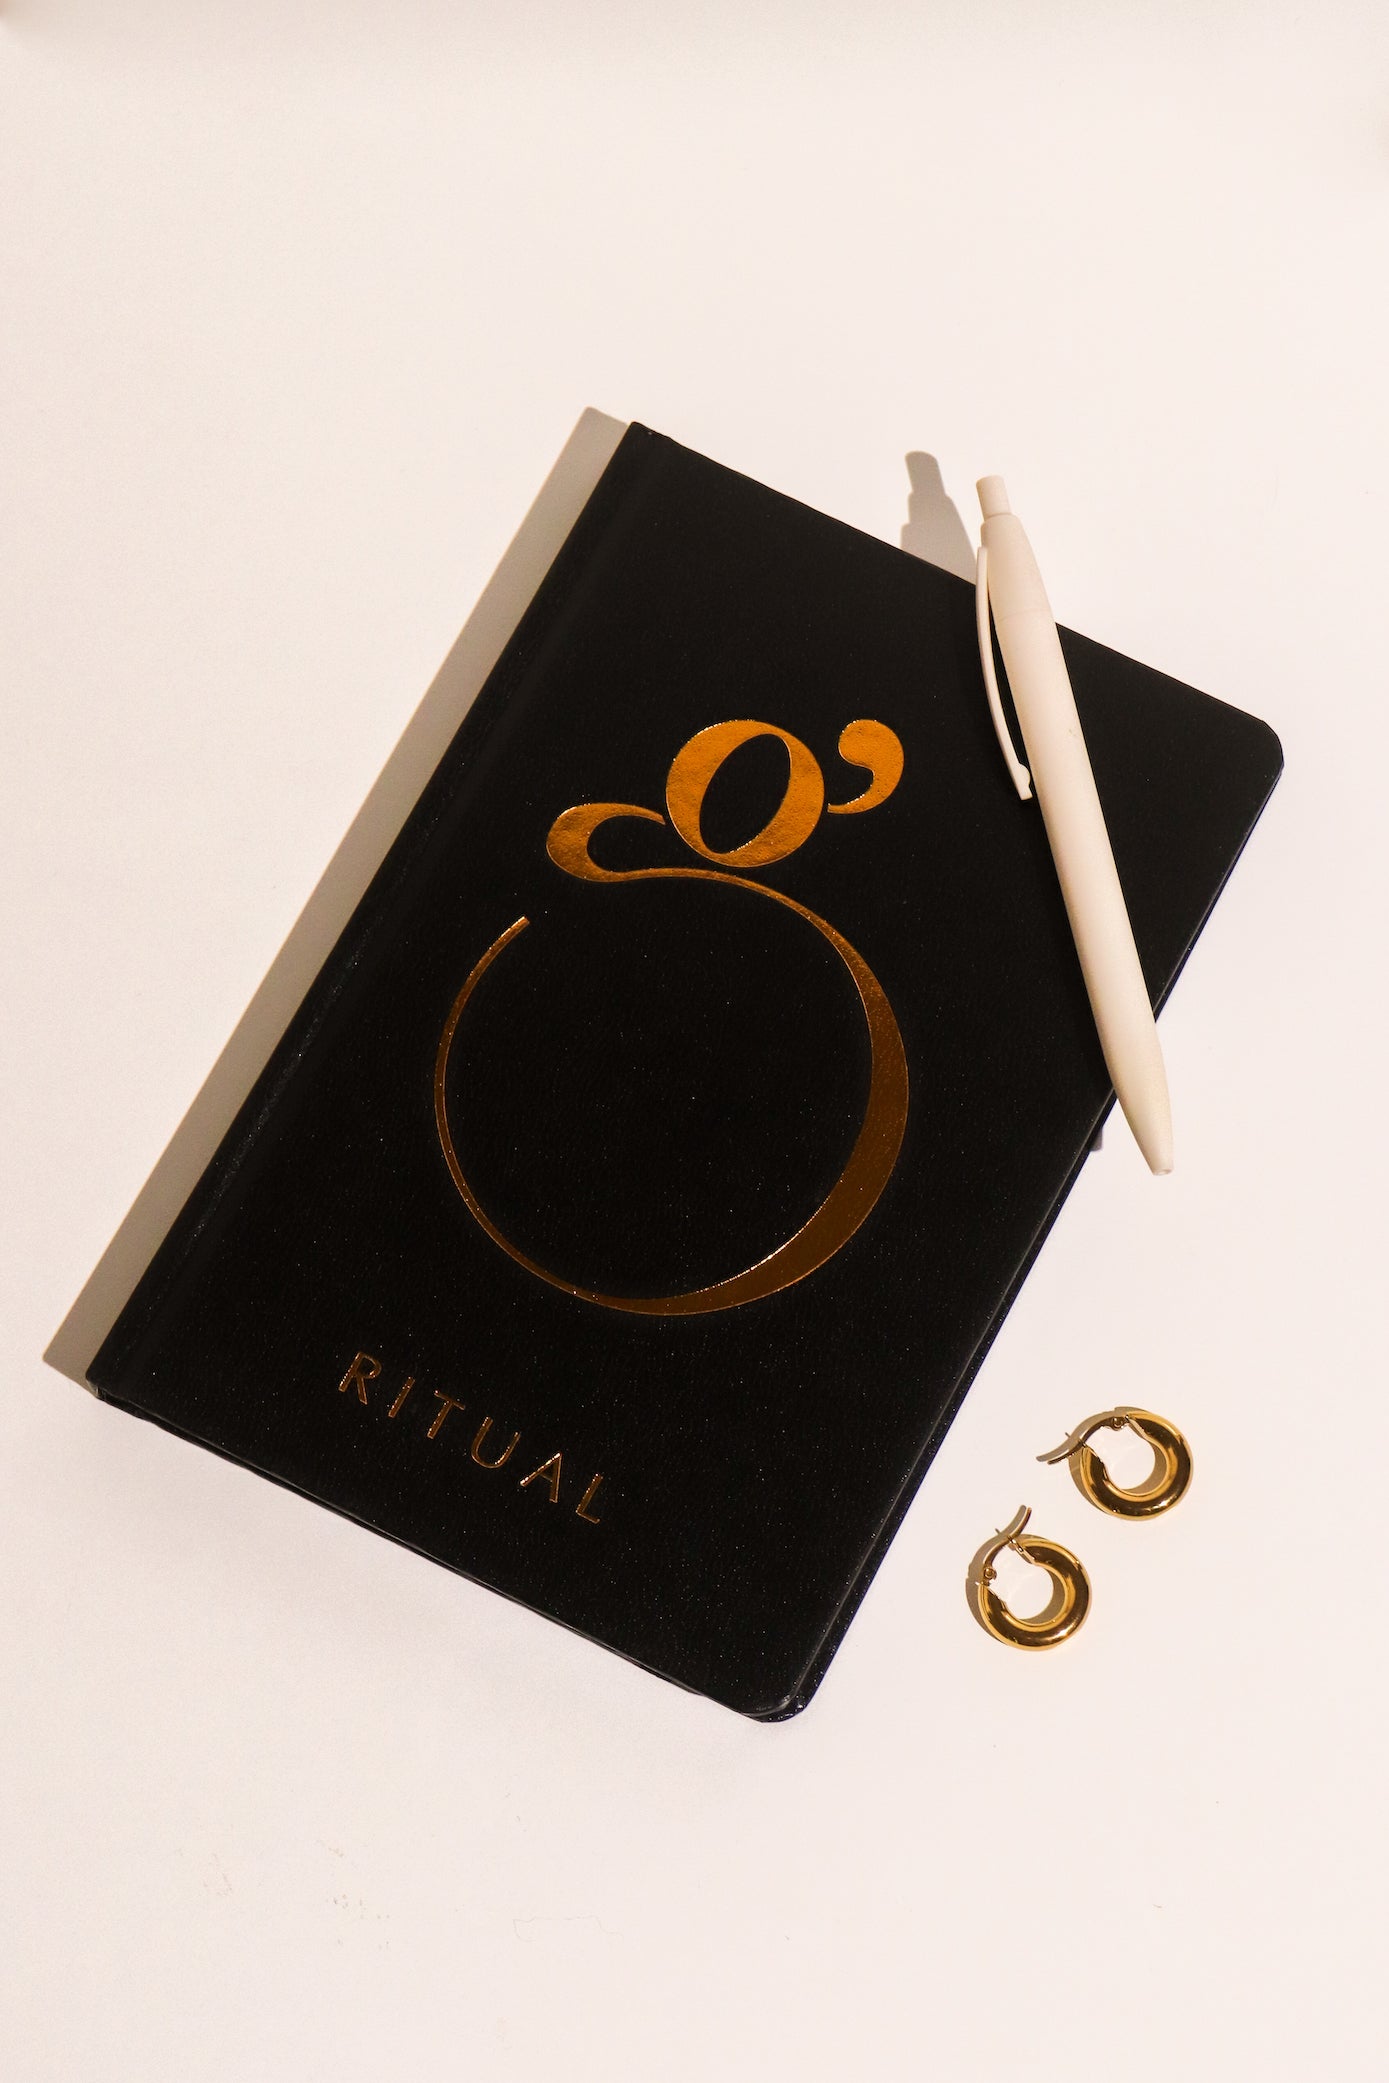 Ritual Journal